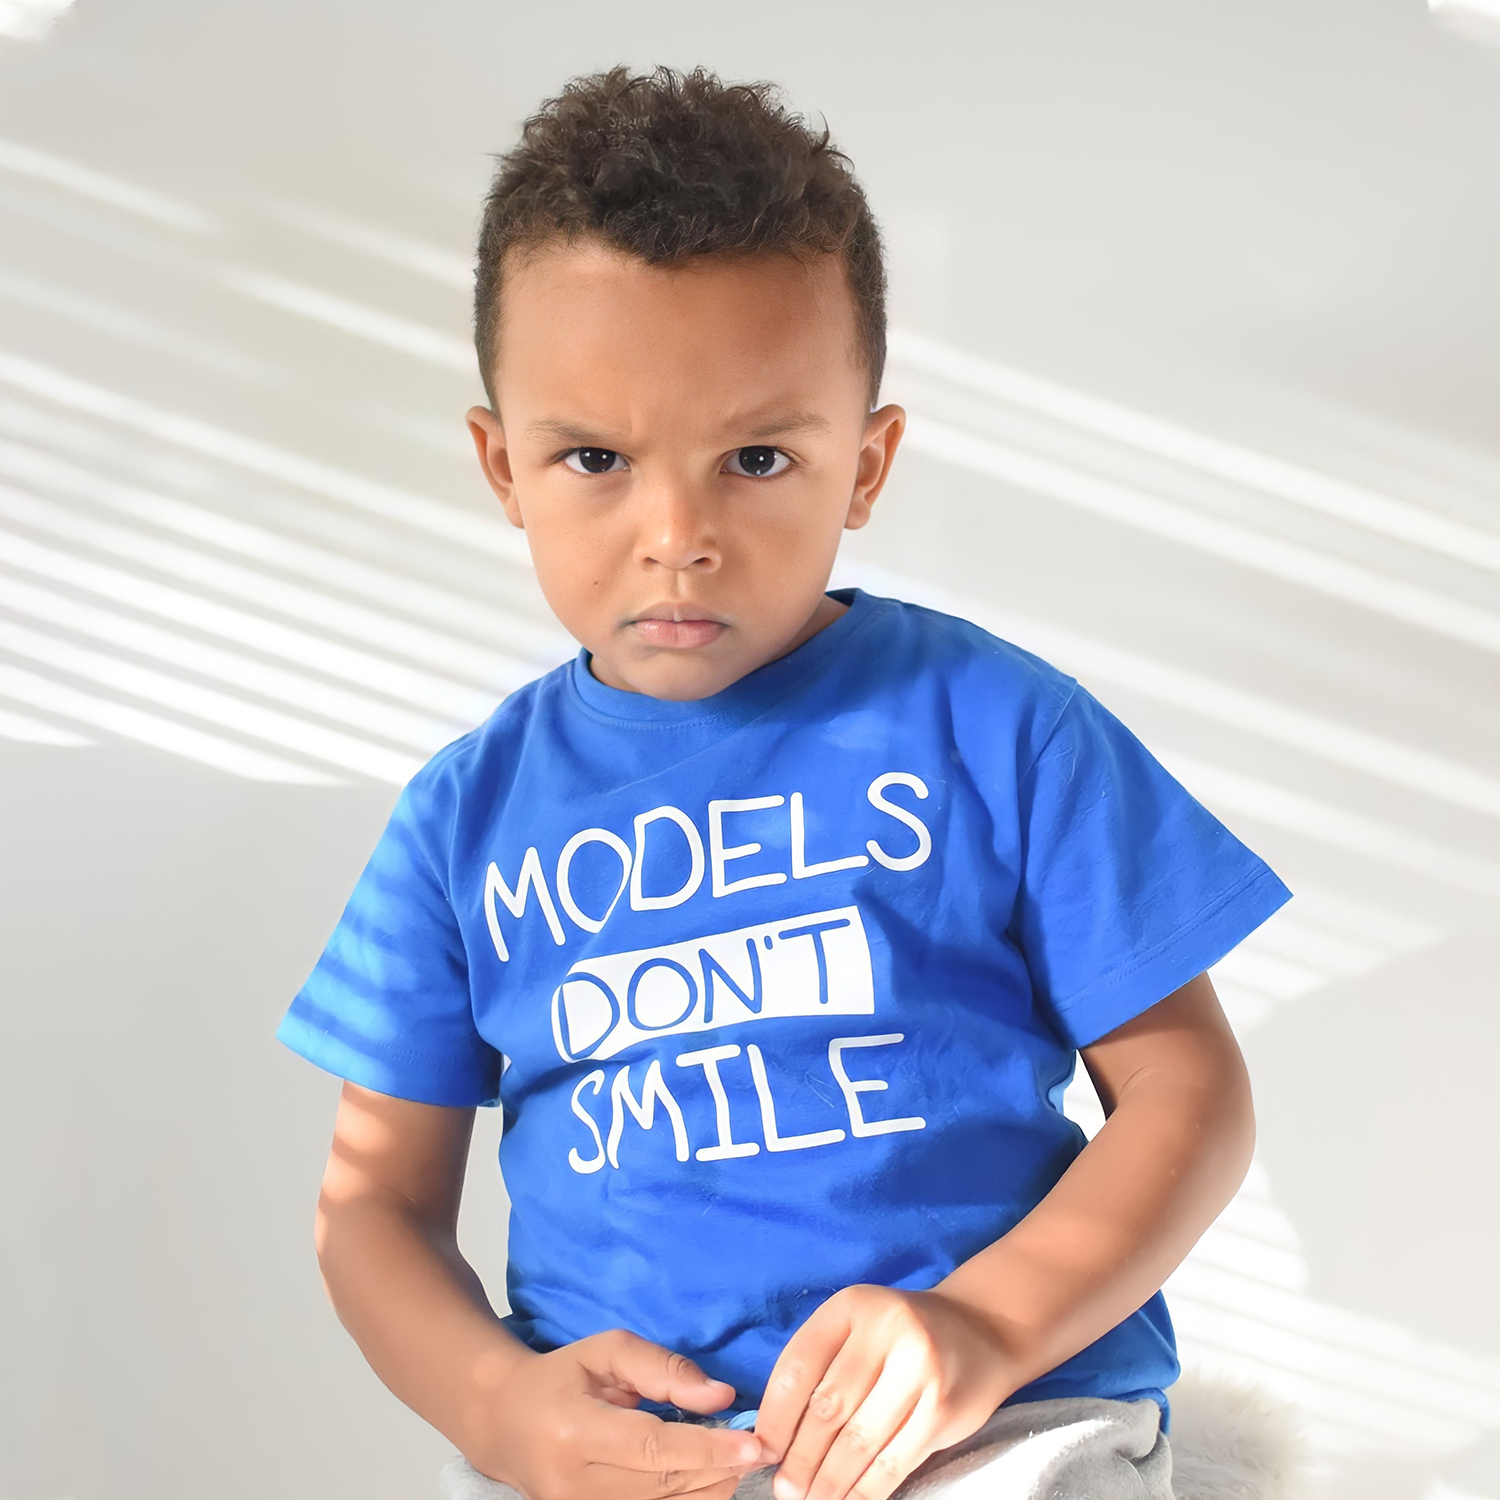 'Models don't smile' kind shirt met korte mouwen